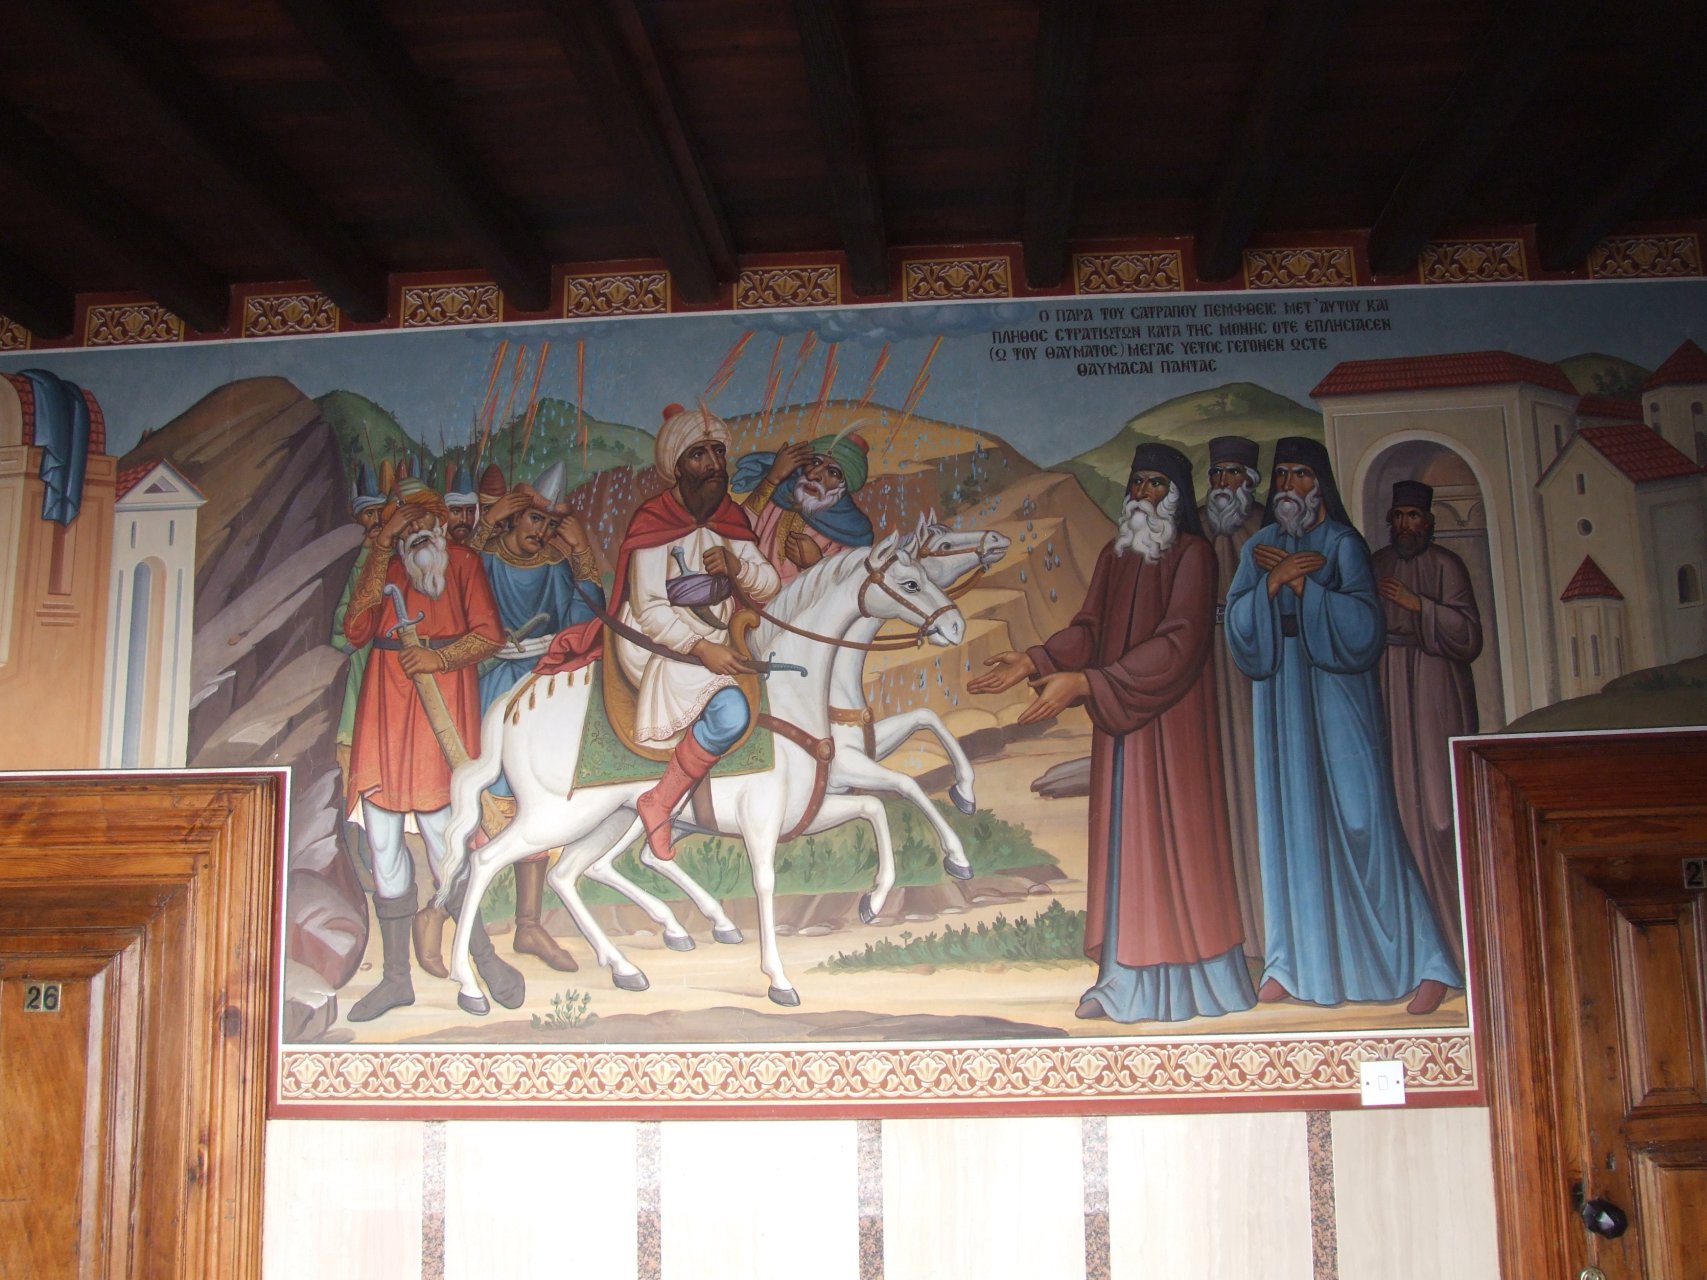 Korytarze w klasztorze zdobione są freskami przedstawiającymi sceny biblijne